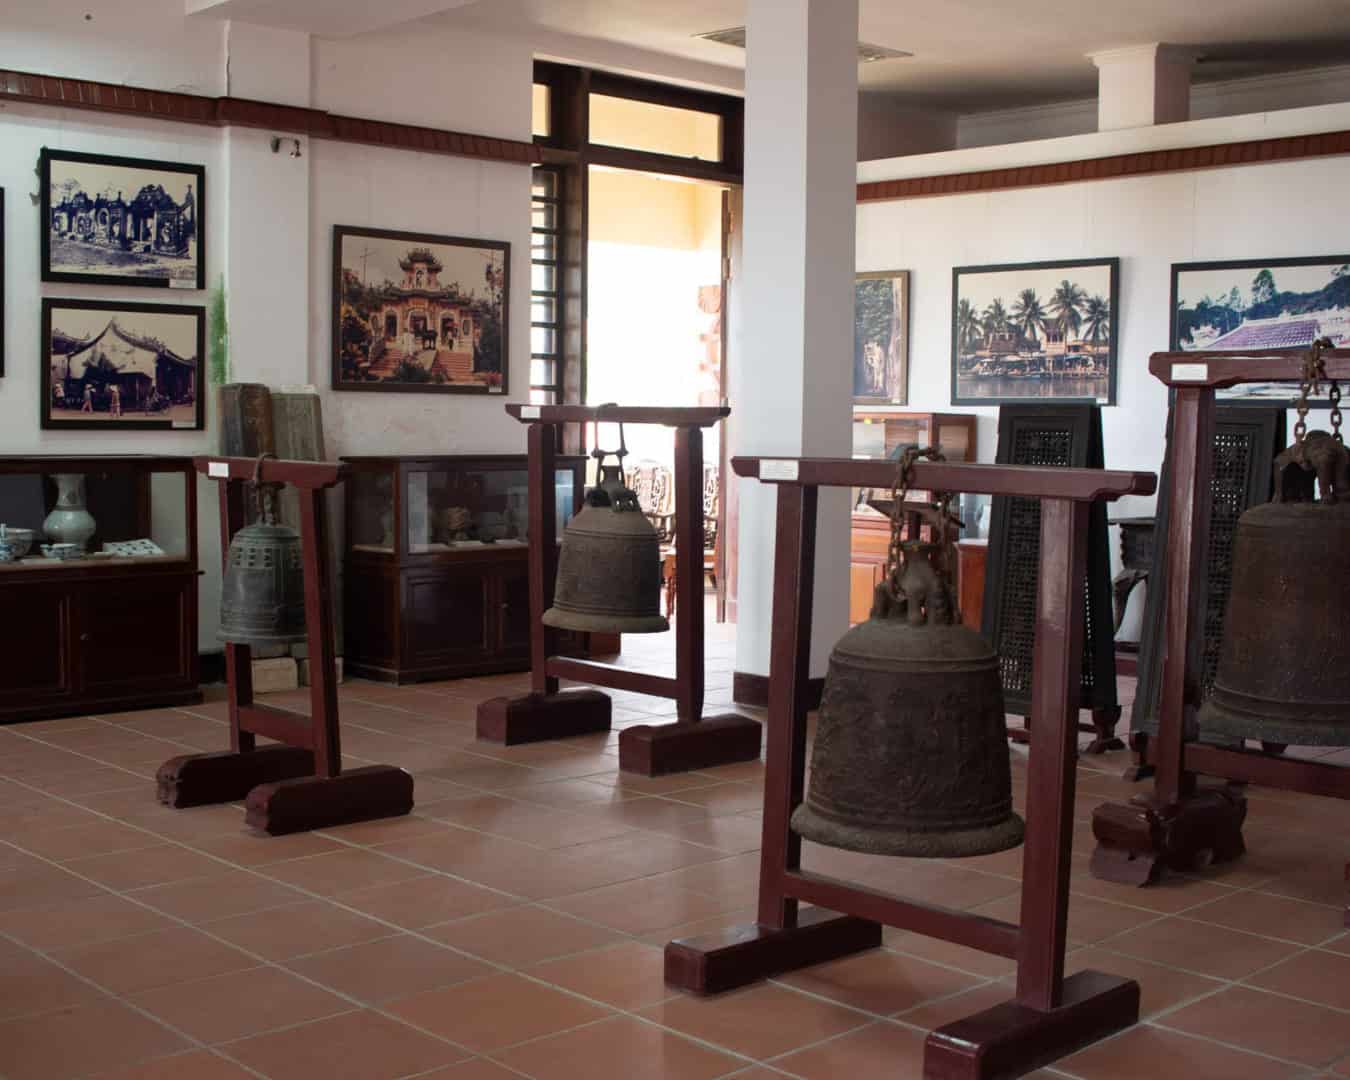 Bảo tàng lịch sử văn hóa Hội An - Minh chứng sống động của thương cảng phồn thịnh một thời 14